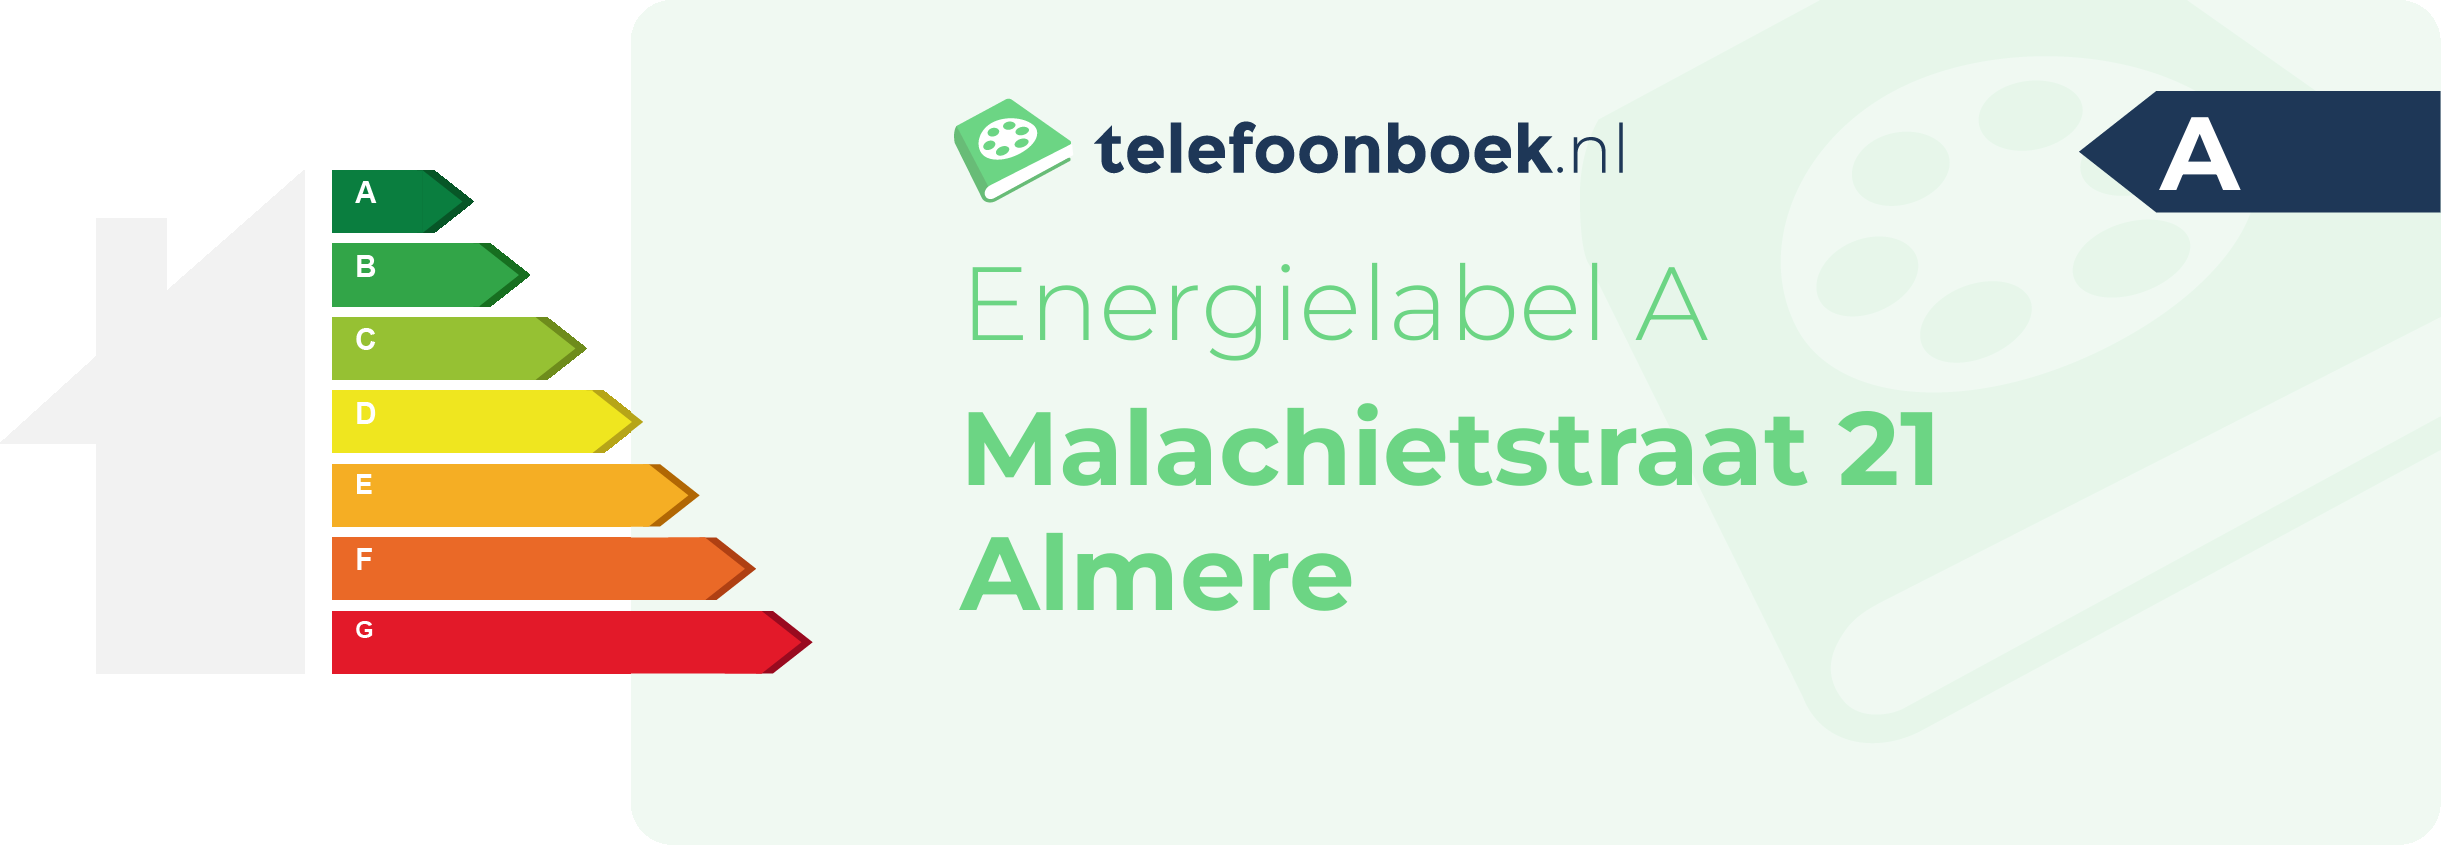 Energielabel Malachietstraat 21 Almere